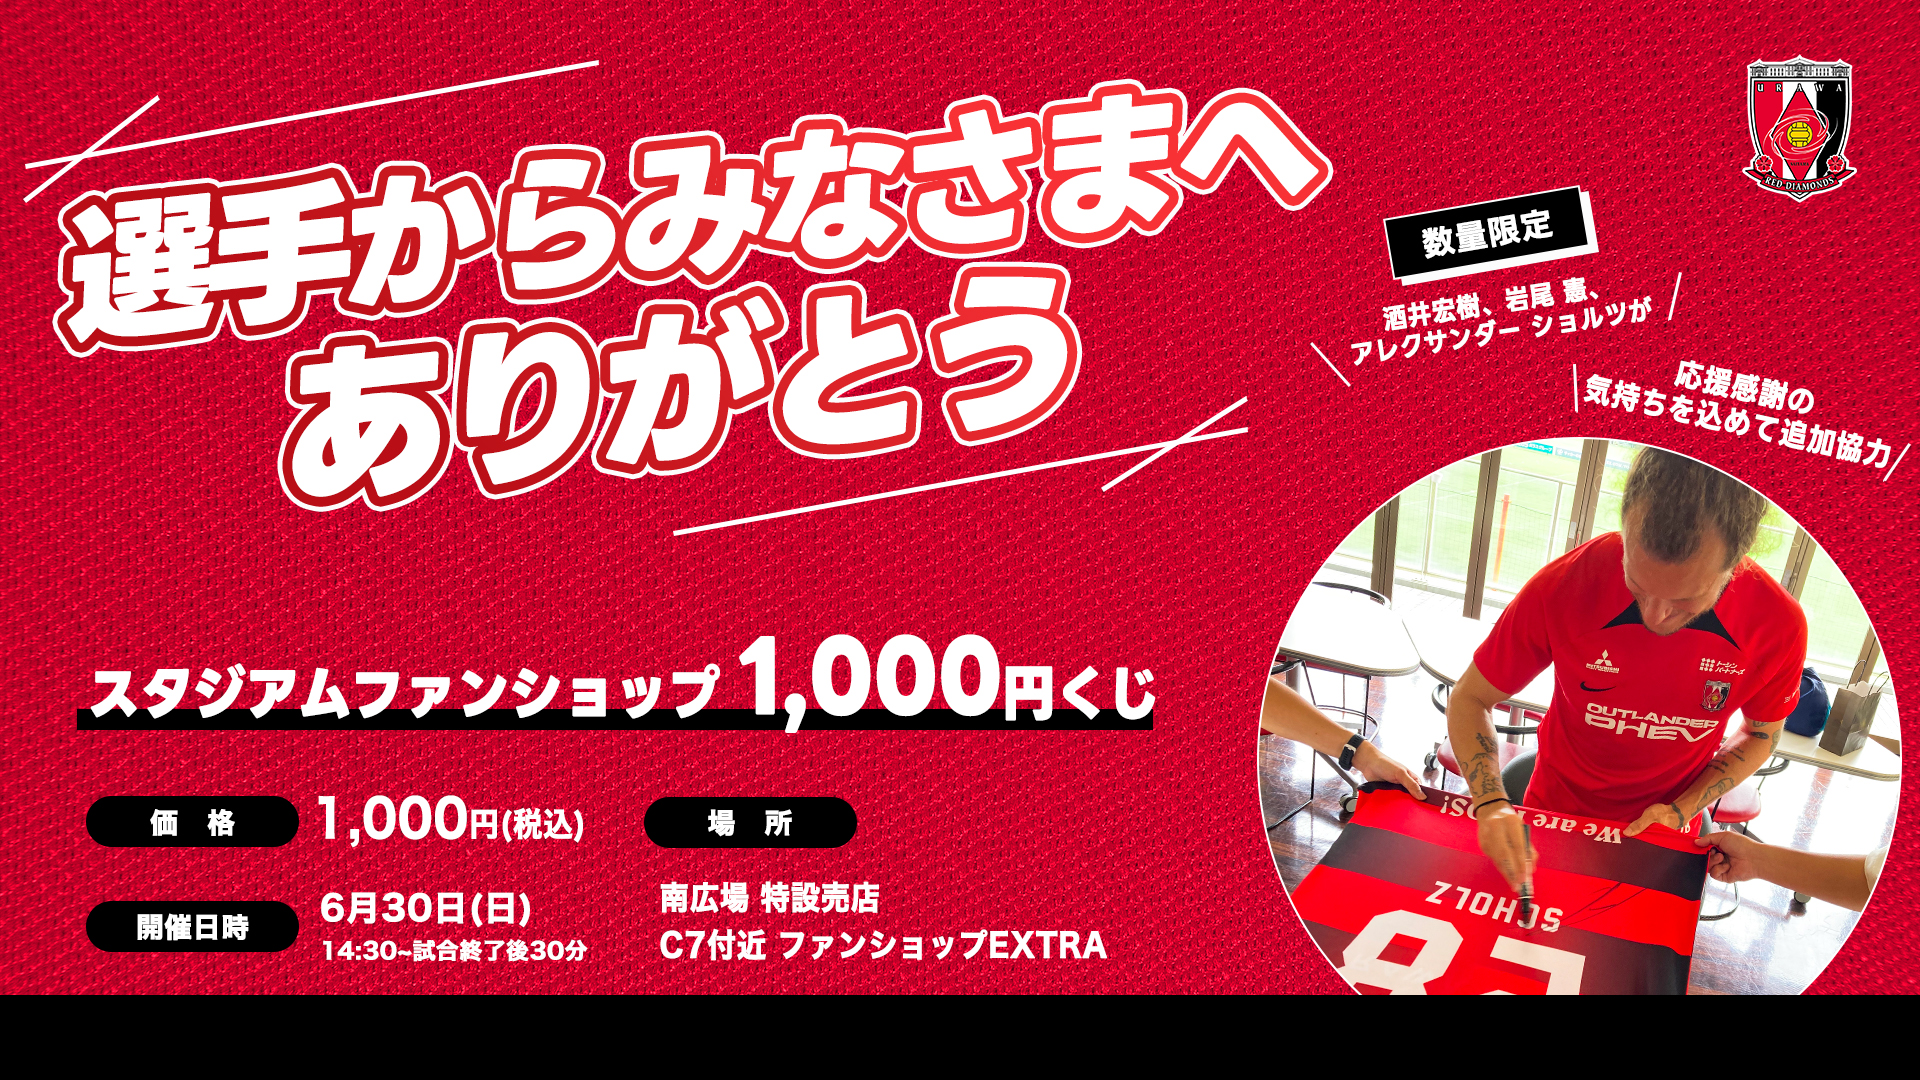 [เพื่อแสดงความขอบคุณต่อทุกคนจากผู้เล่น] ลอตเตอรี 1,000 เยนจะจัดขึ้นในวันอาทิตย์ที่ 30 มิถุนายนกับอิวาตะ!